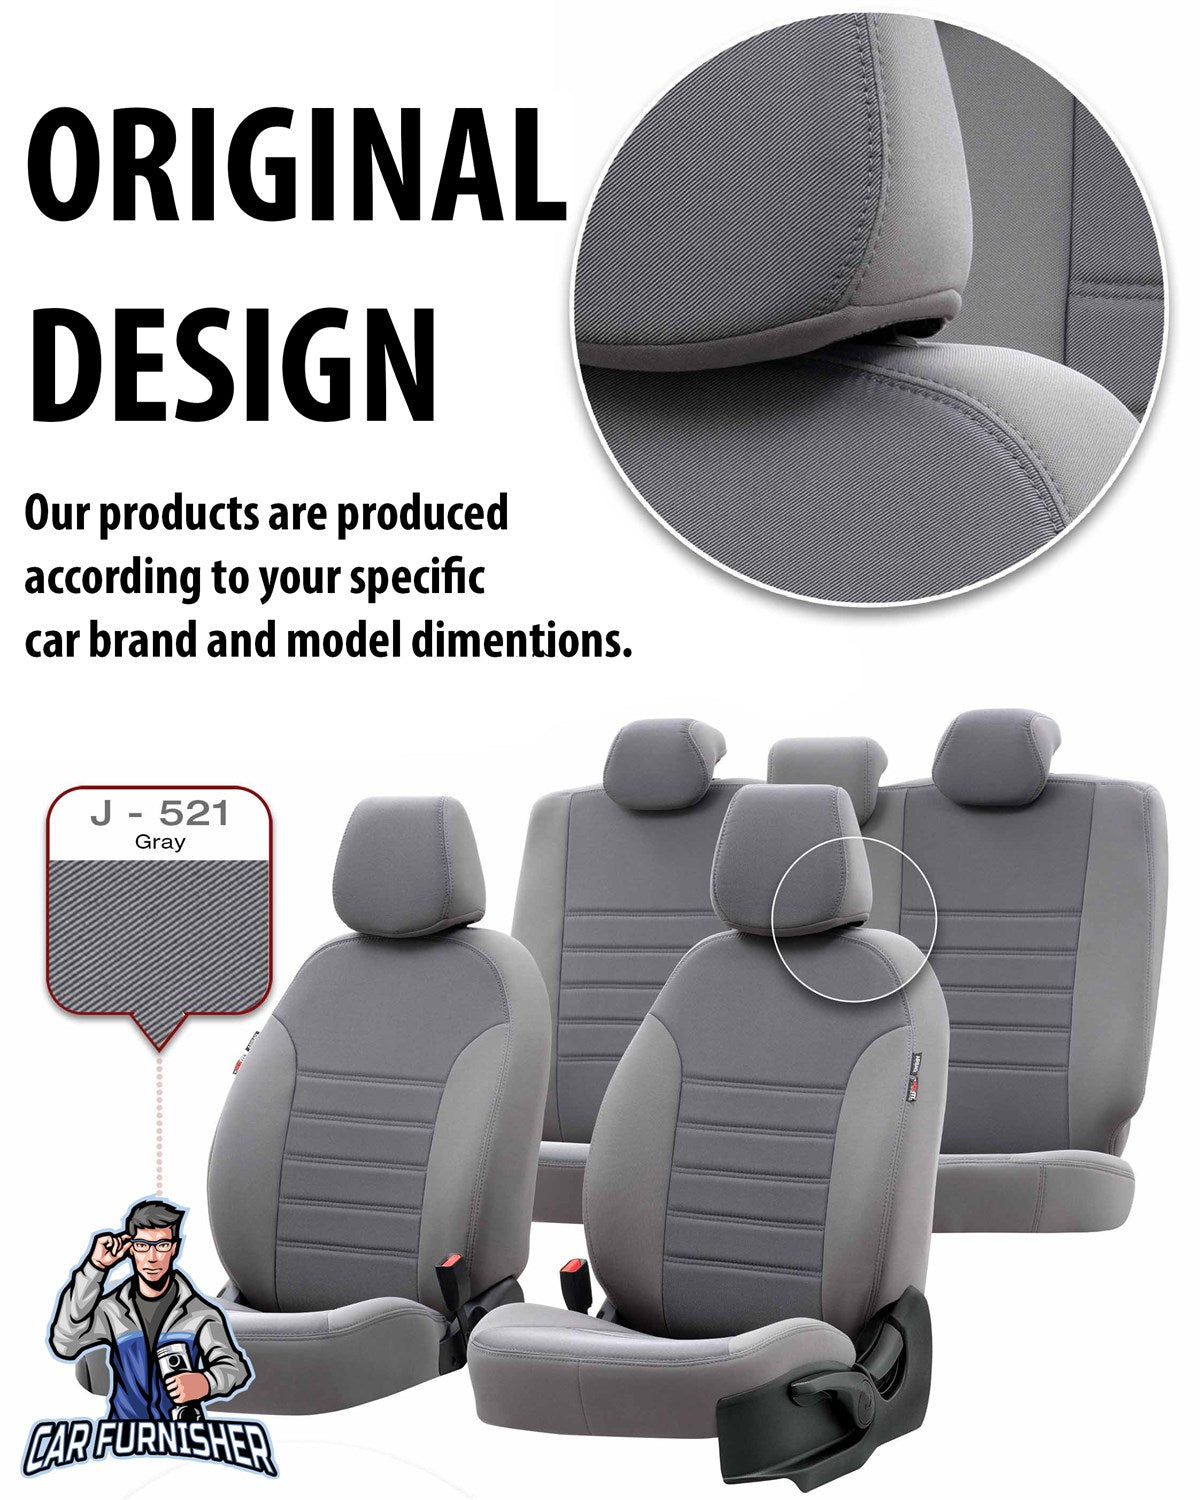 Toyota CHR Seat Cover Original Jacquard Design Blue Jacquard Fabric